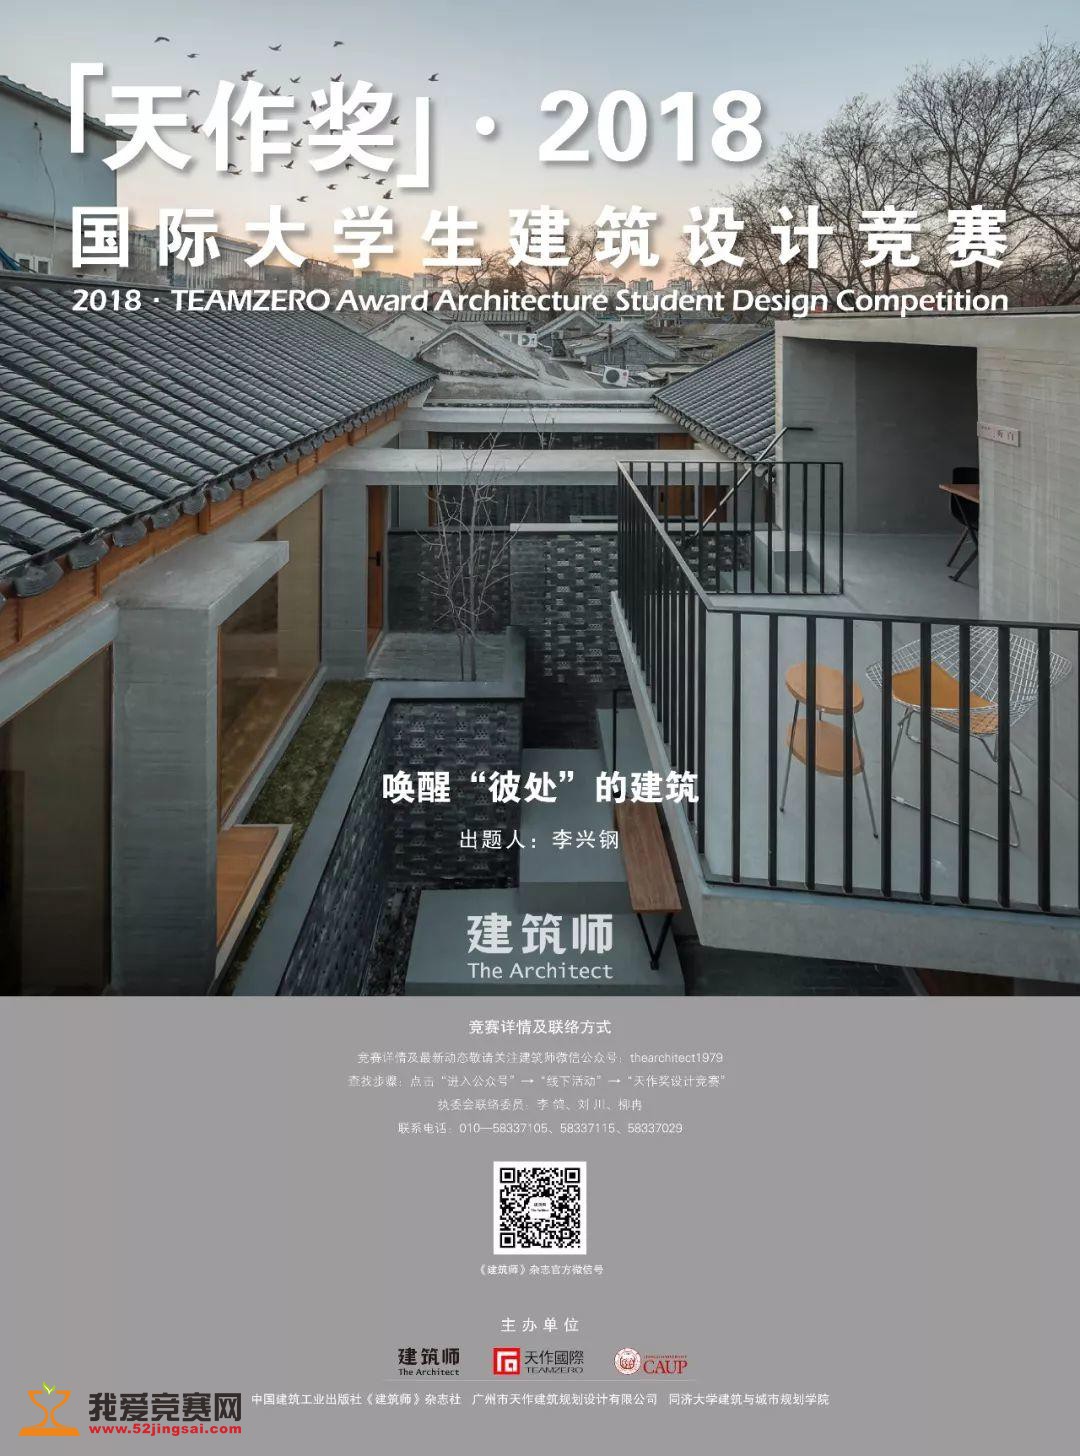 首届全国绿色建筑设计竞赛在2020中国建筑学会年会上隆重颁奖 - 东南大学建筑学院 - 思政网育人号